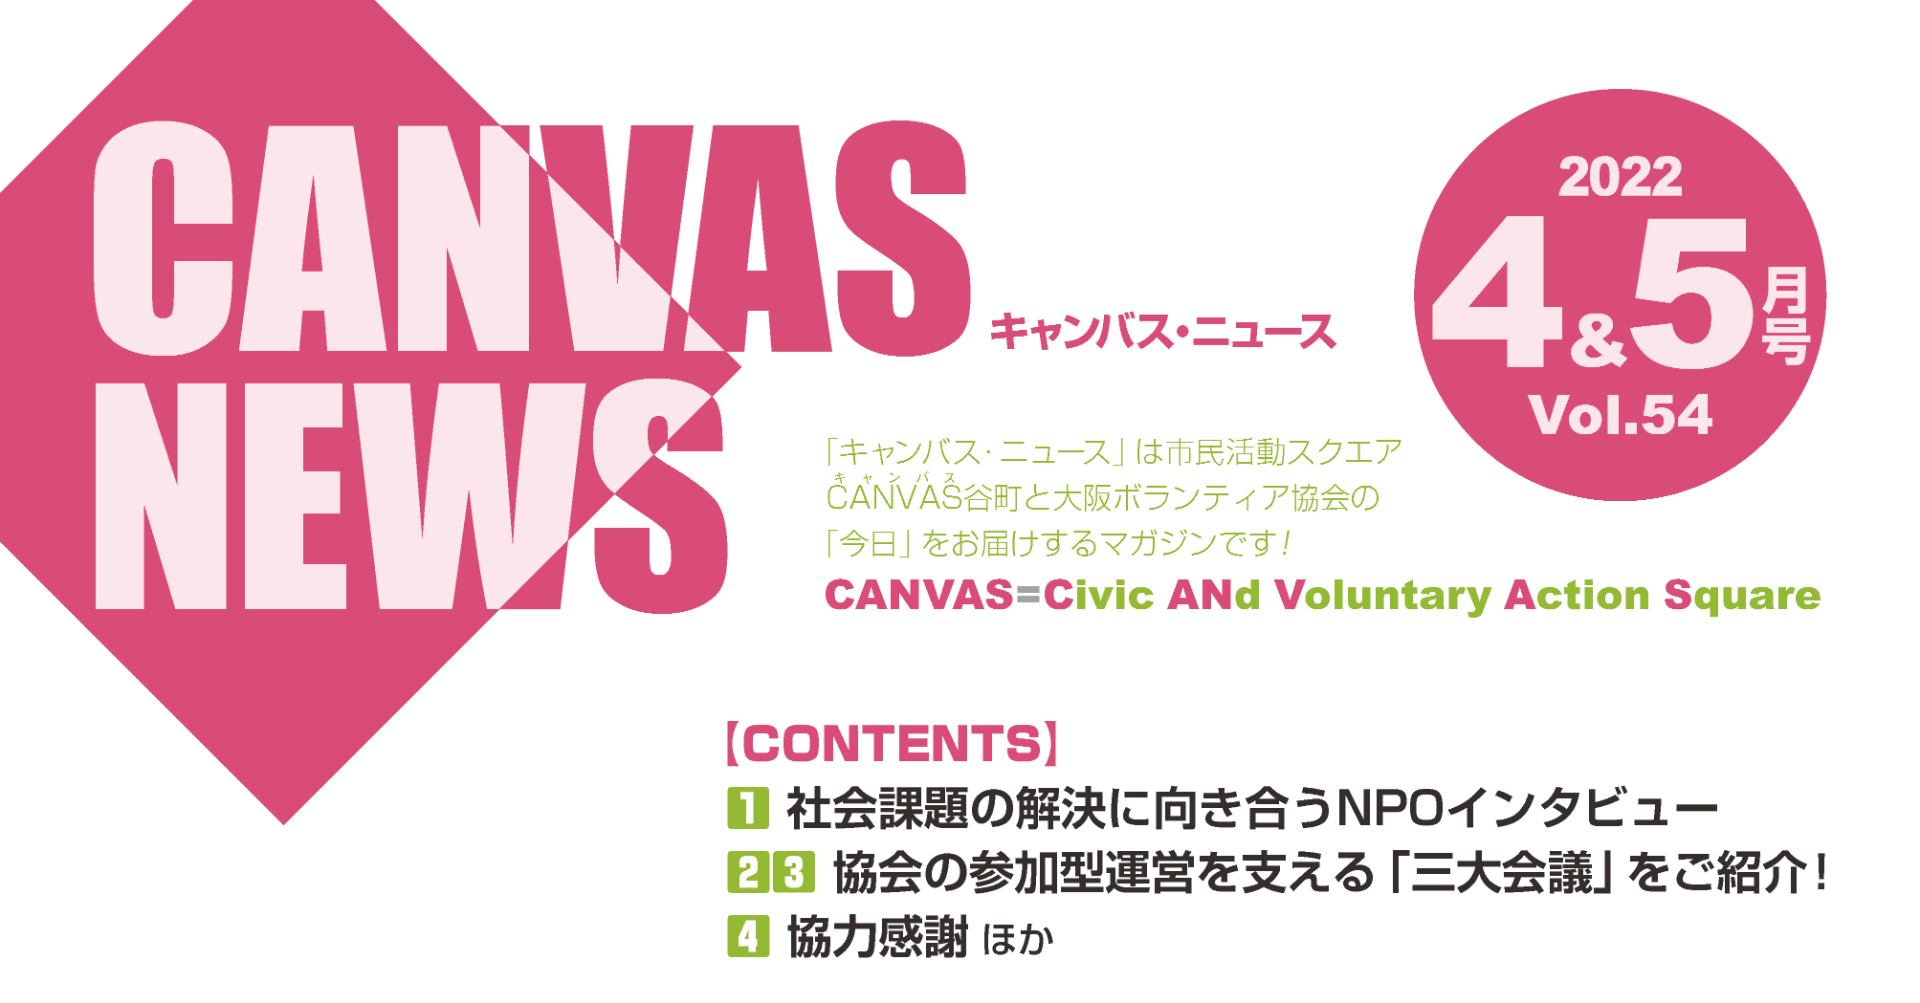 【CANVAS NEWS】2022年4・5月号